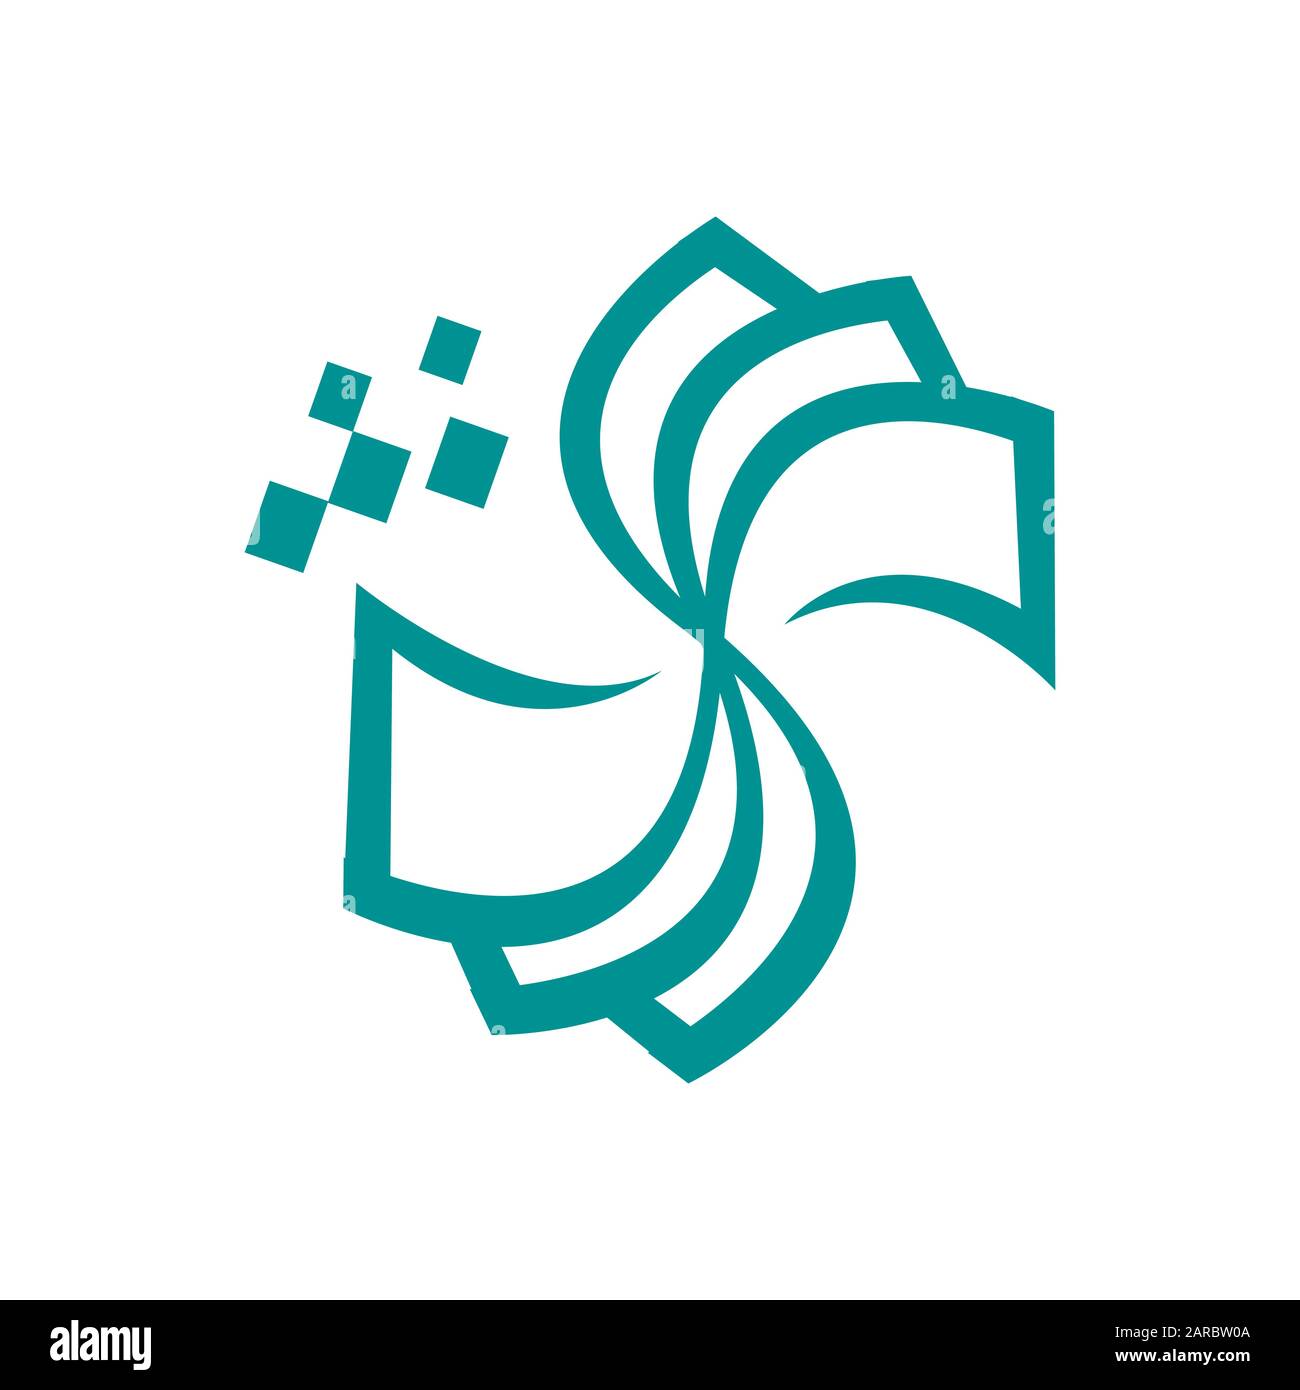 Logo De Paiement Numérique Icône Symbole De Signe De Trésorerie Illustration de Vecteur